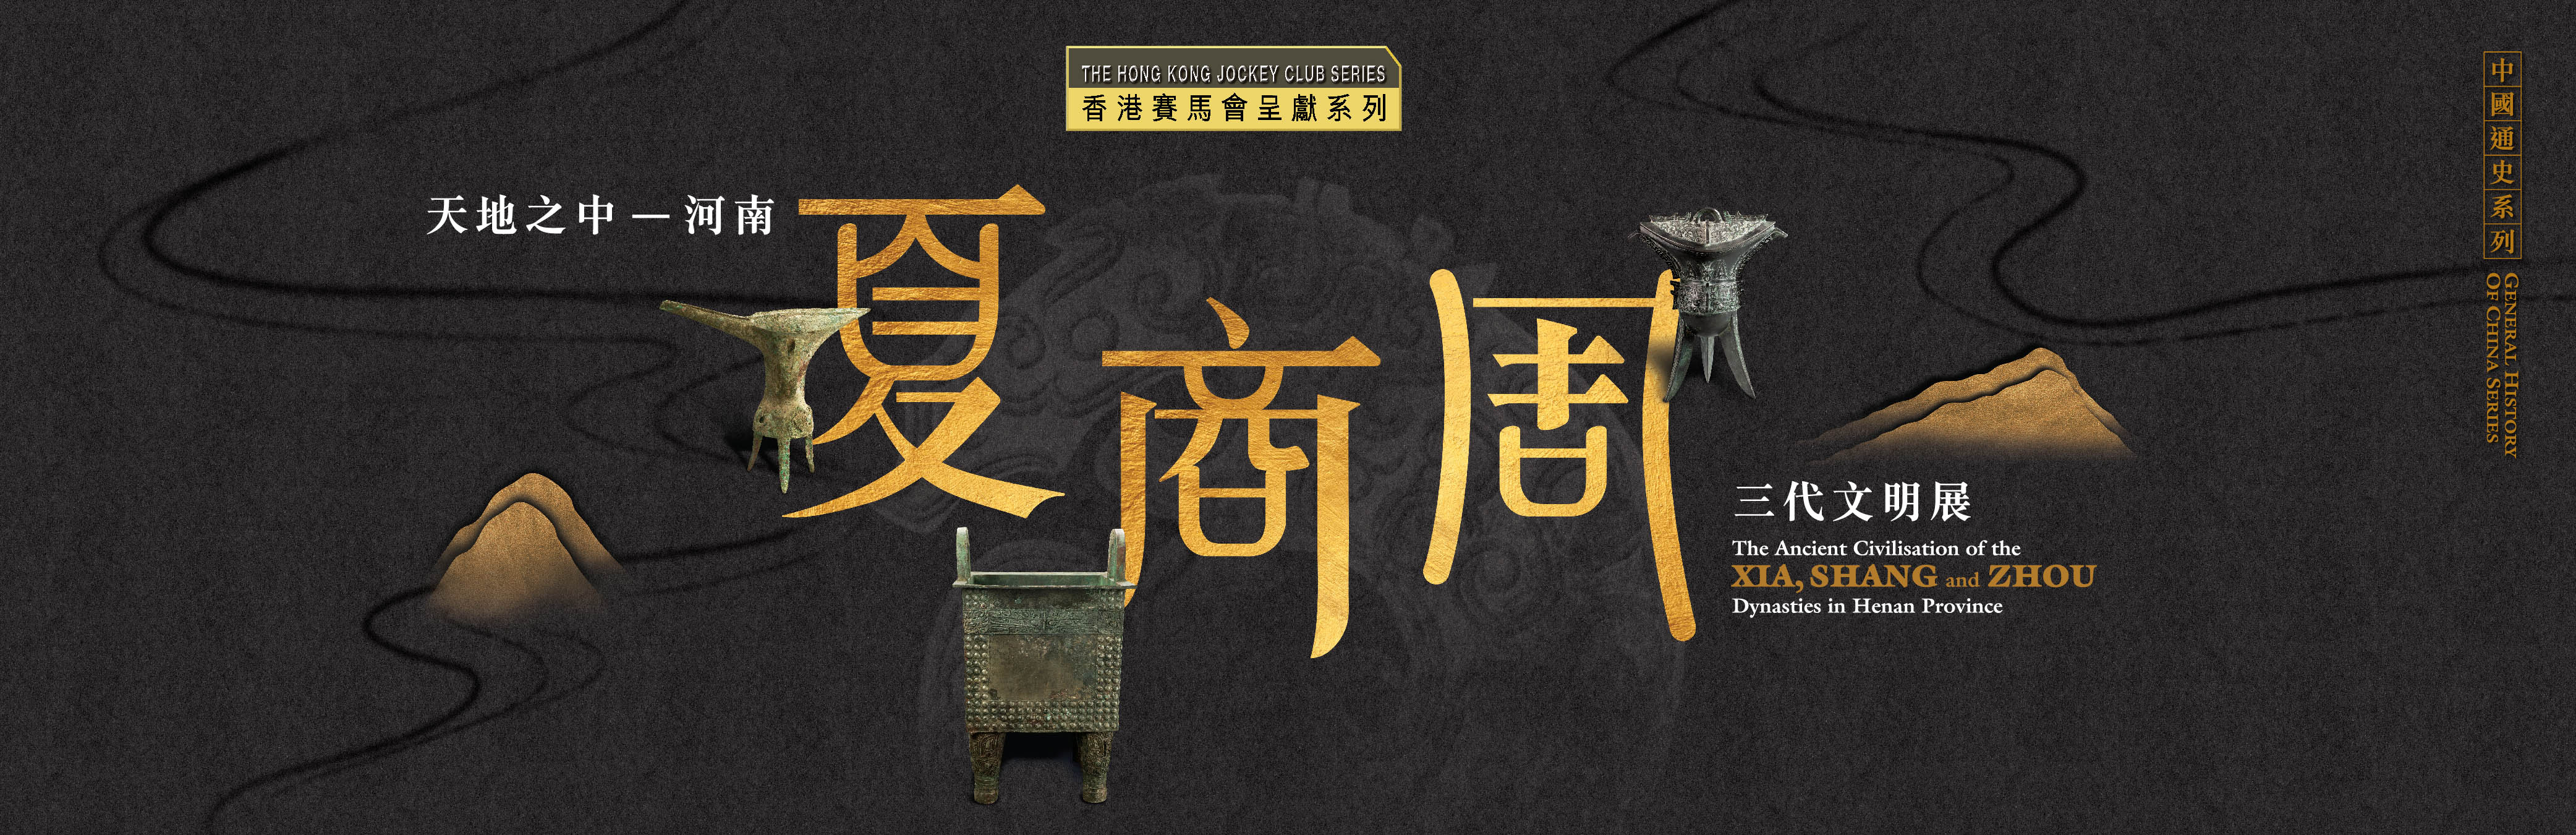  香港历史博物馆 - 录音导赏